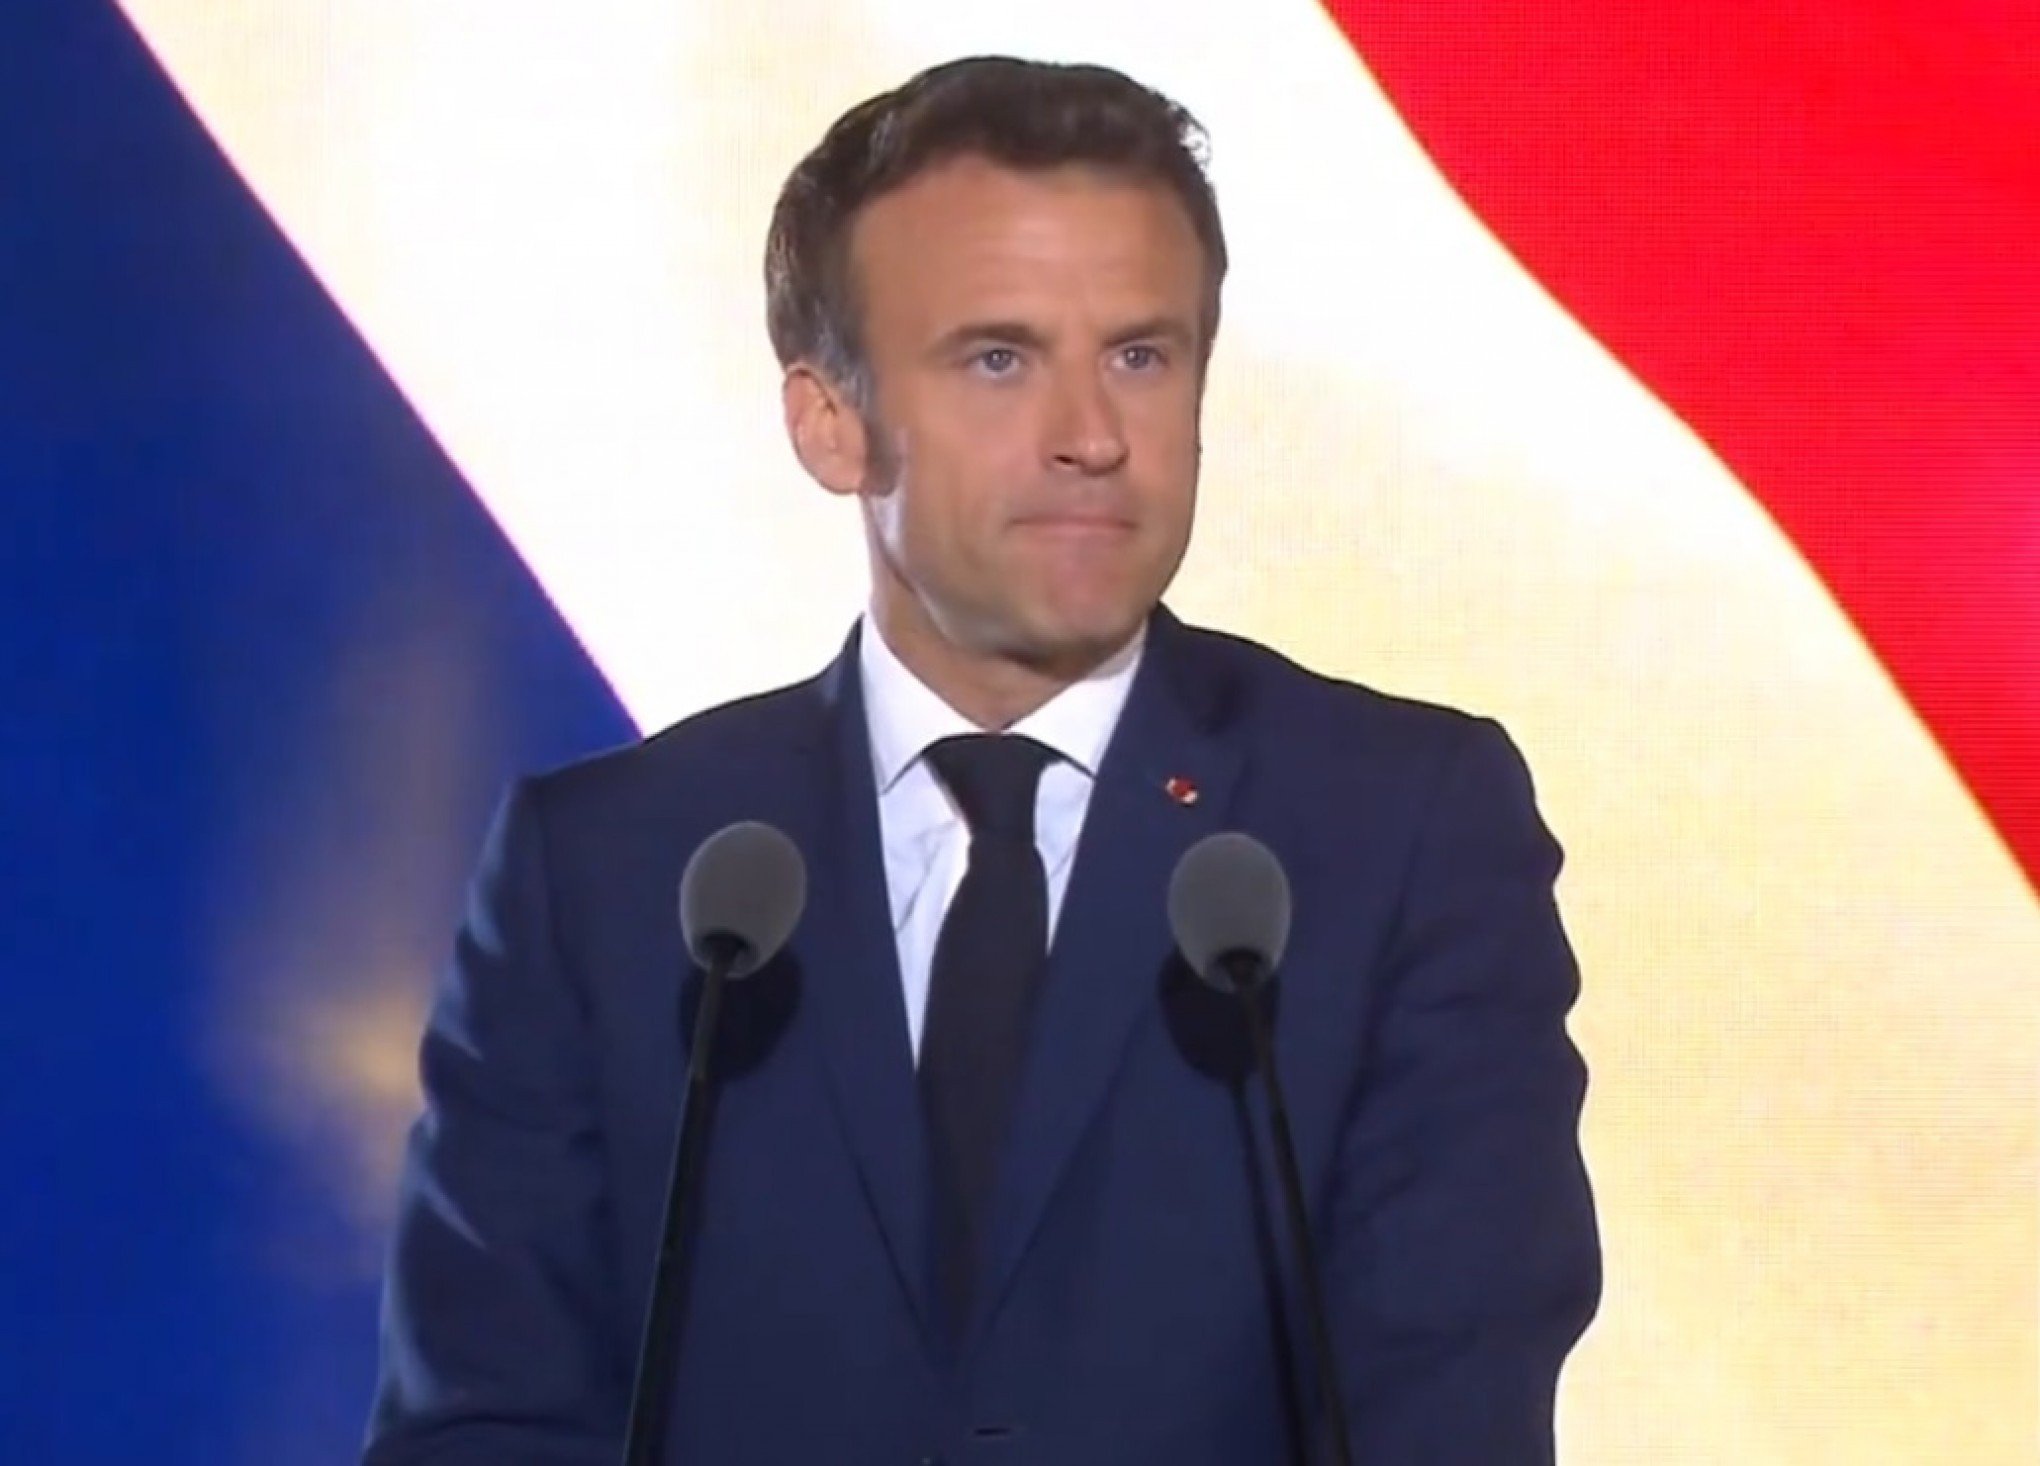 PRESENTE MACABRO: Presidente da França recebe pacote com pedaço de dedo humano